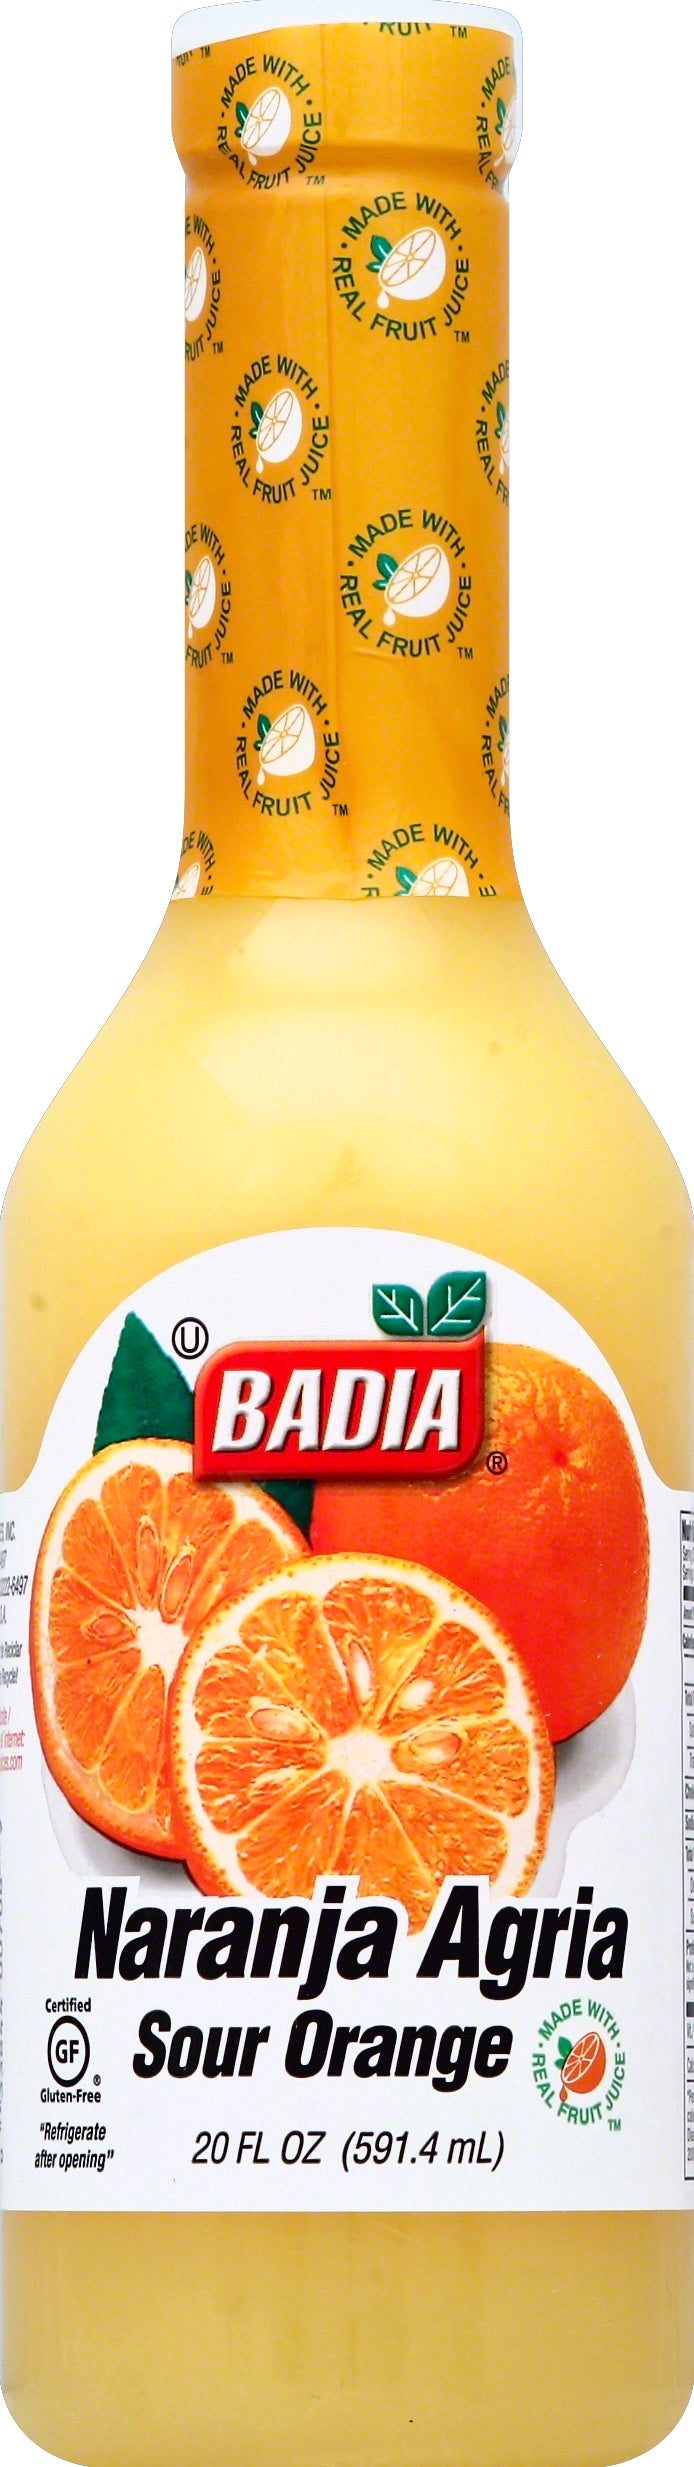 Badia Sour Orange Marinade-20 fl oz.s-12/Case